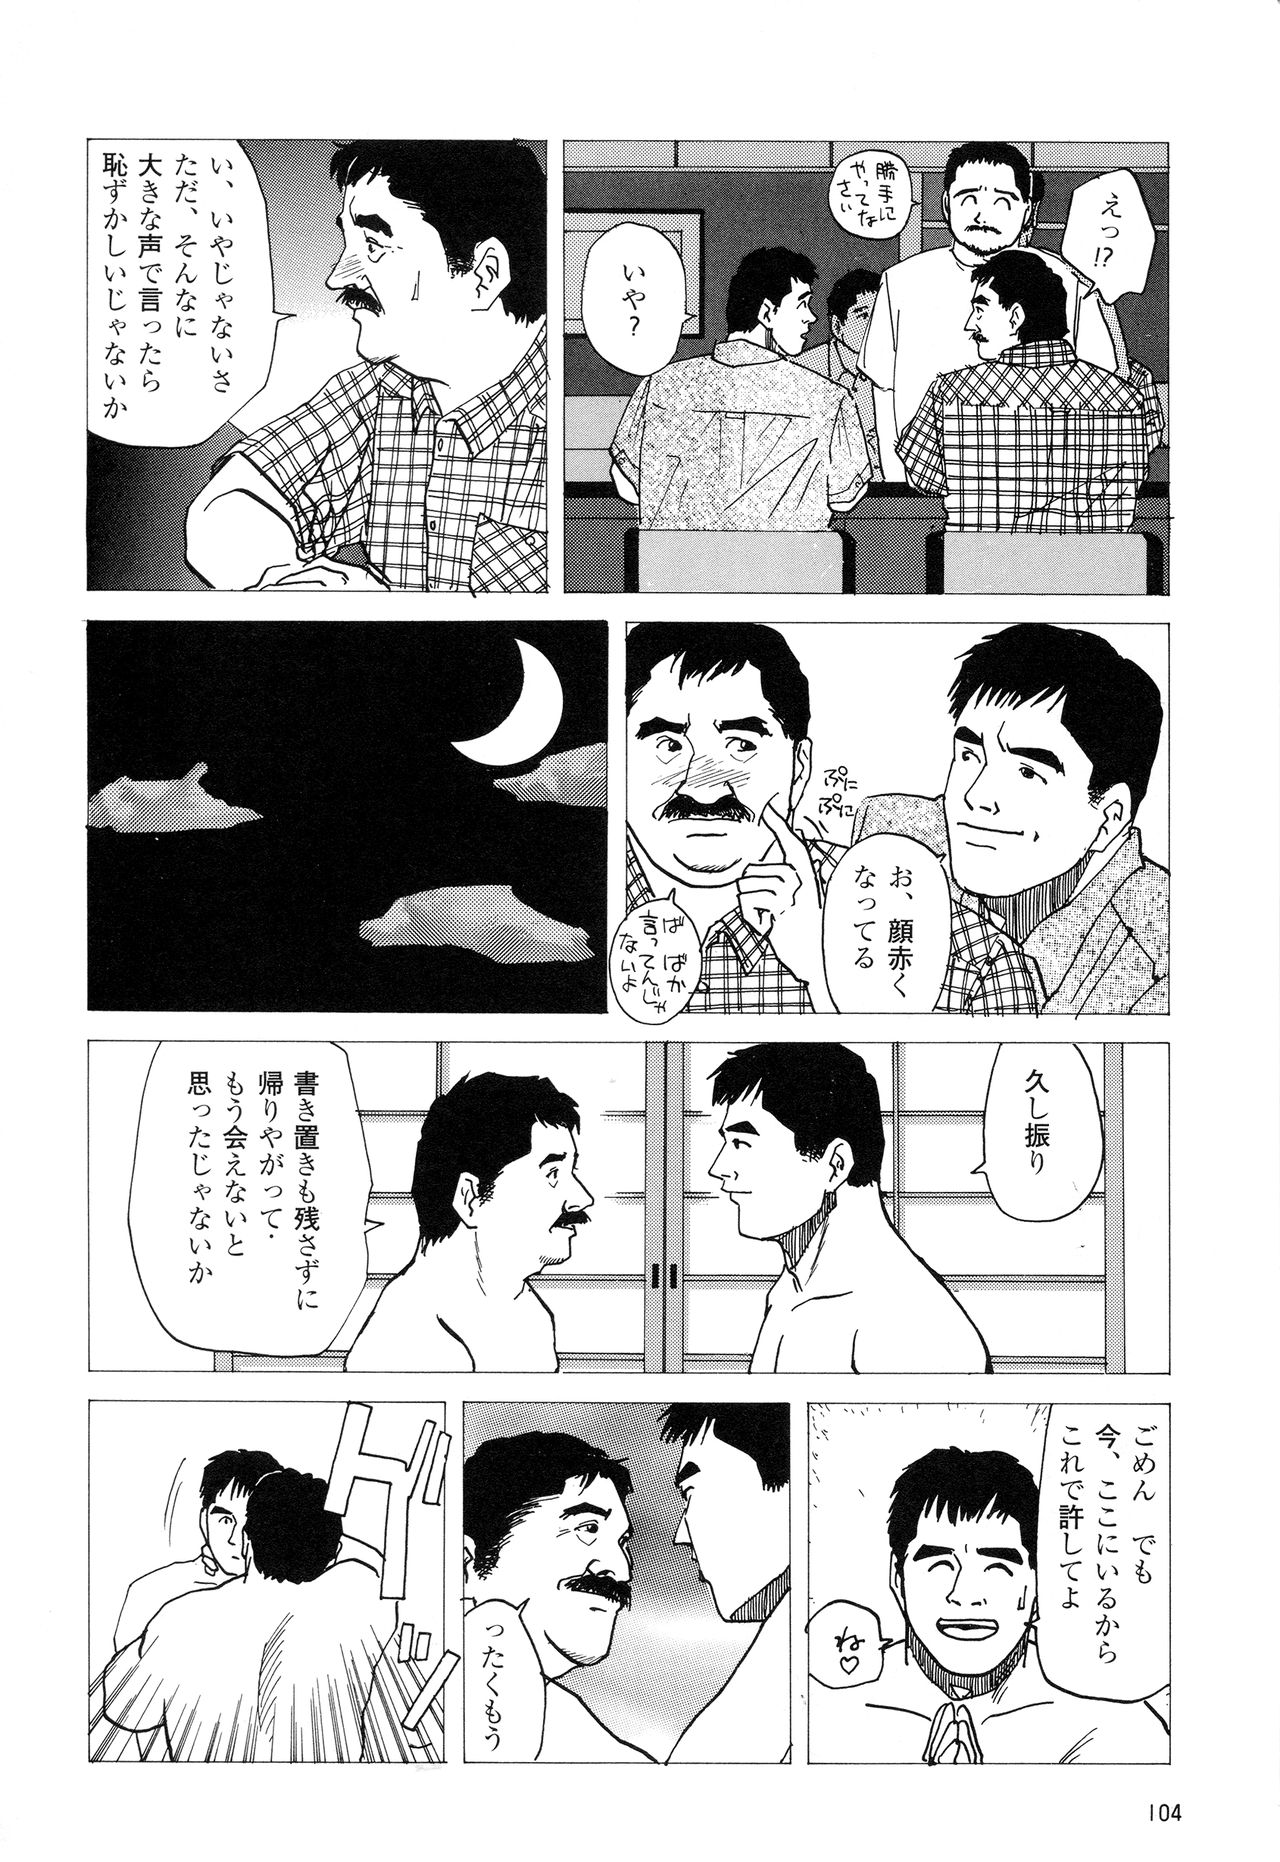 [上条毬男] みちくさ (G‐Men No.4 1994年11月25日)